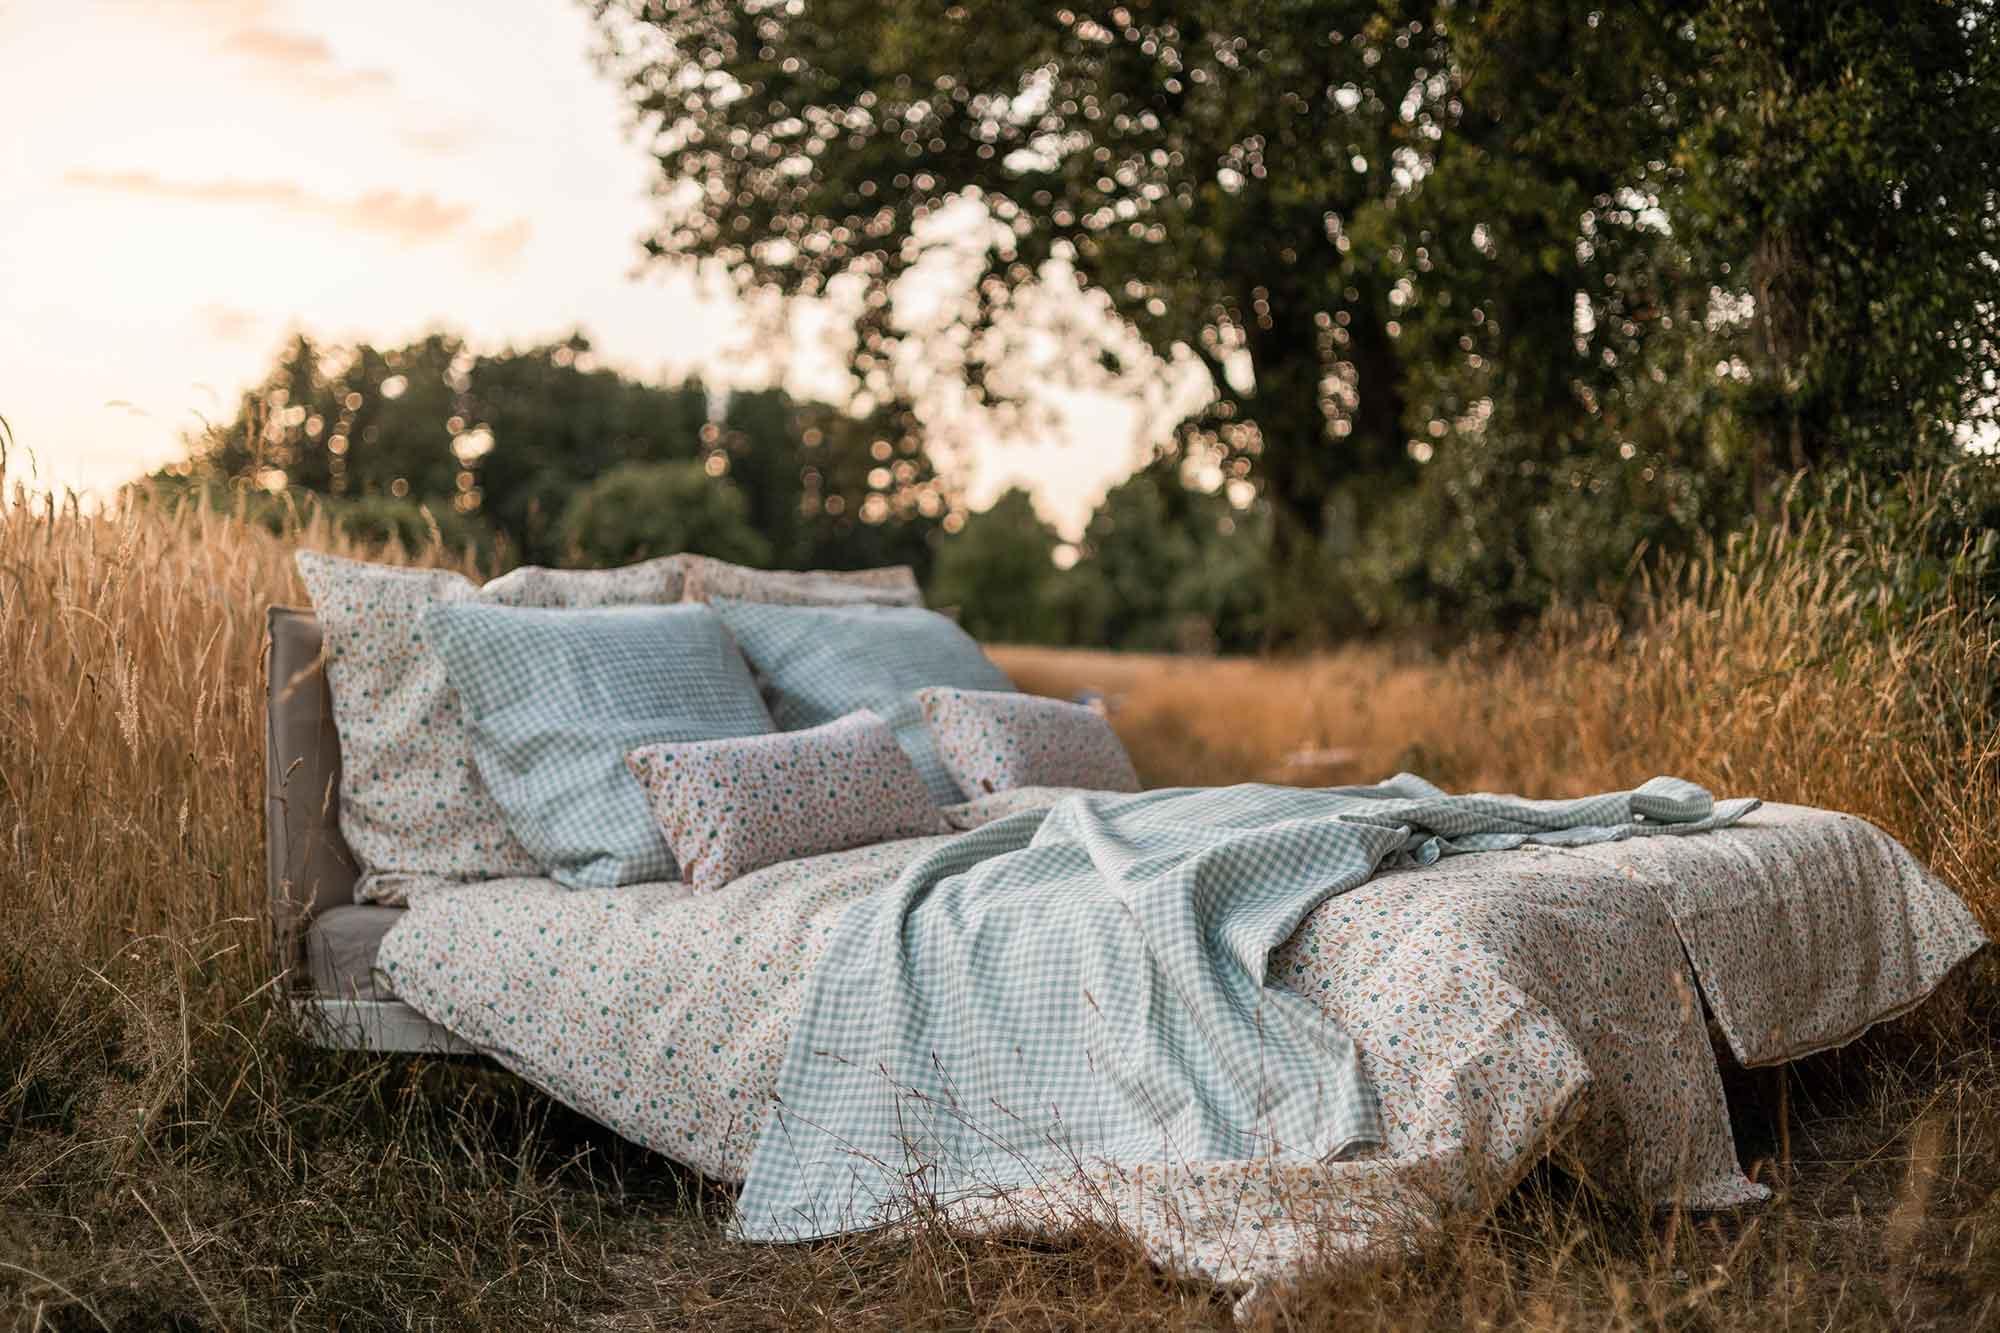 Ein Bett im Kornfeld